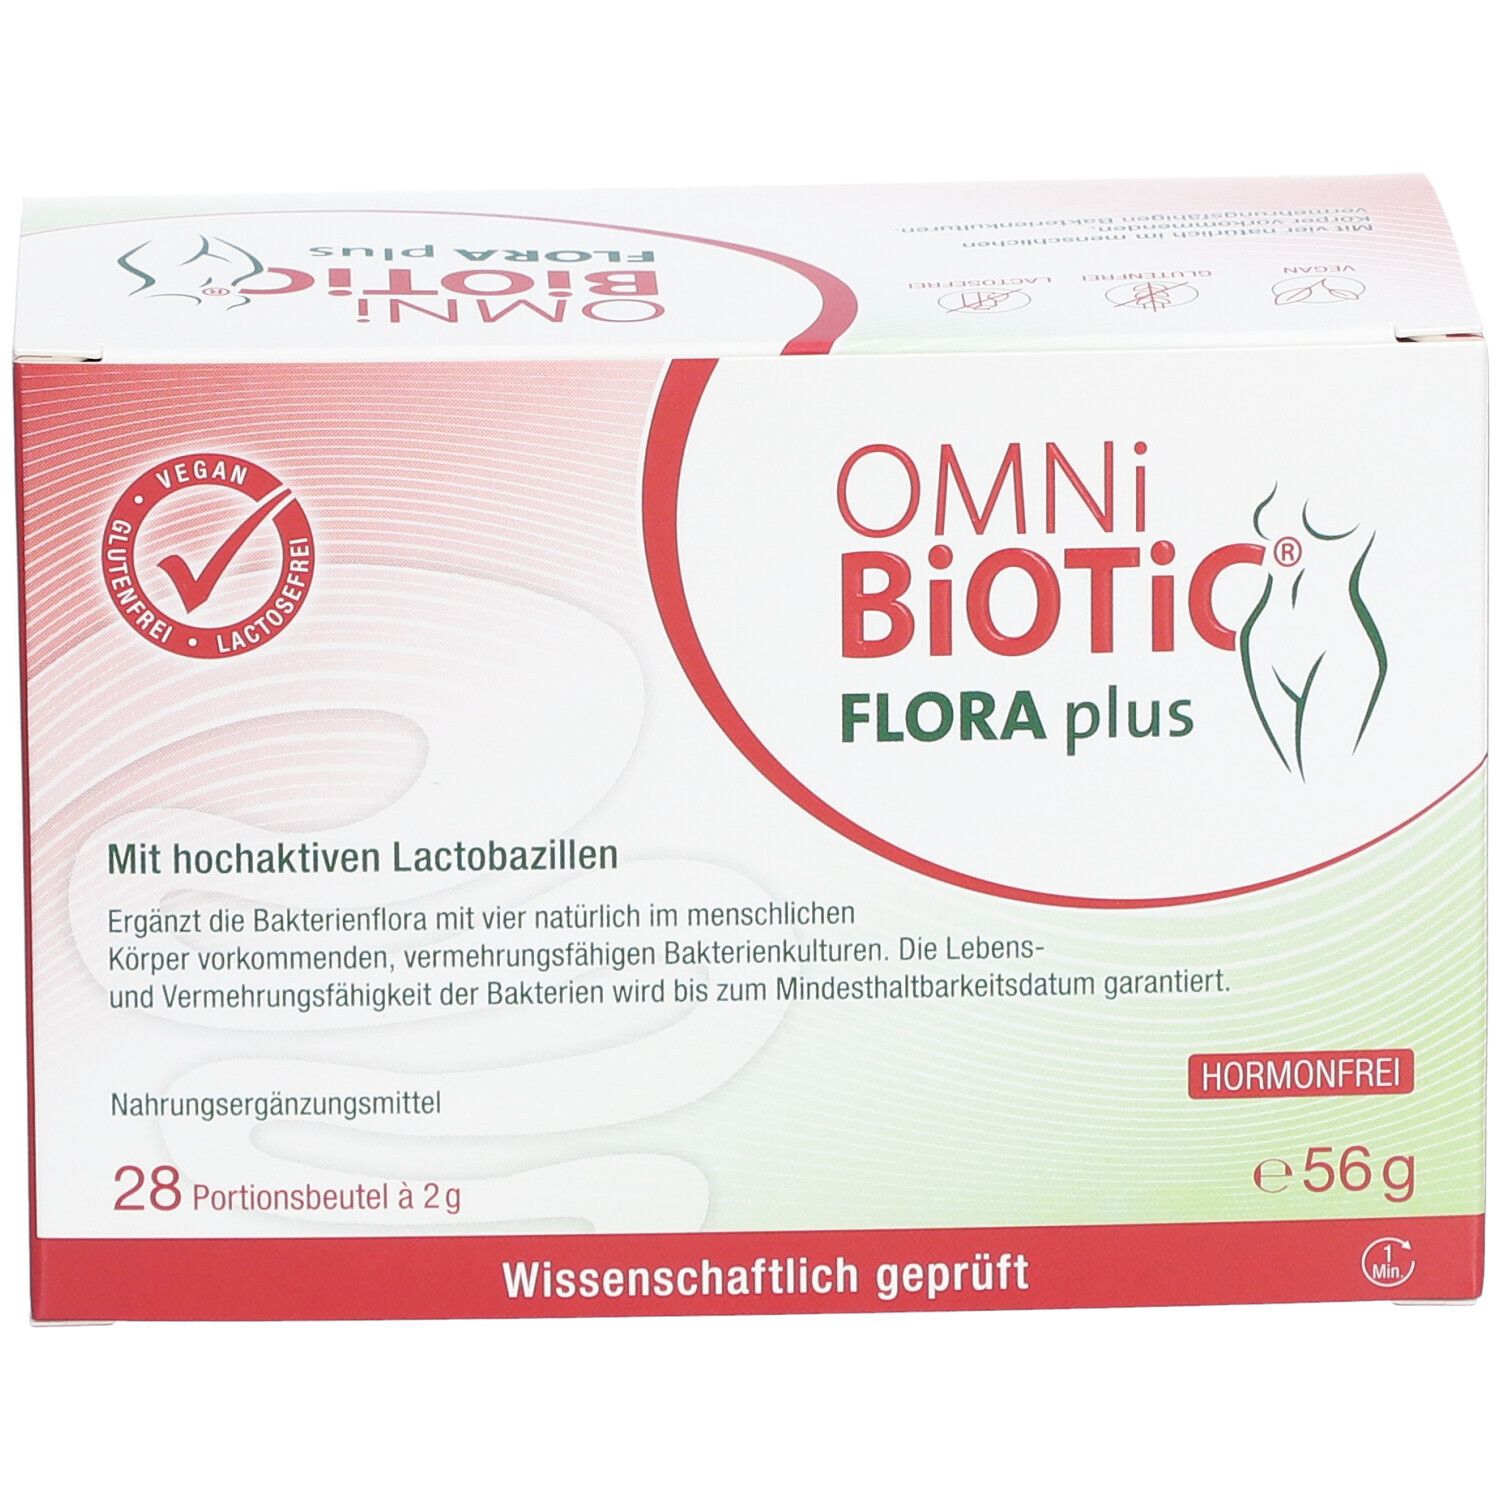 OMNi-BiOTiC® FLORA plus